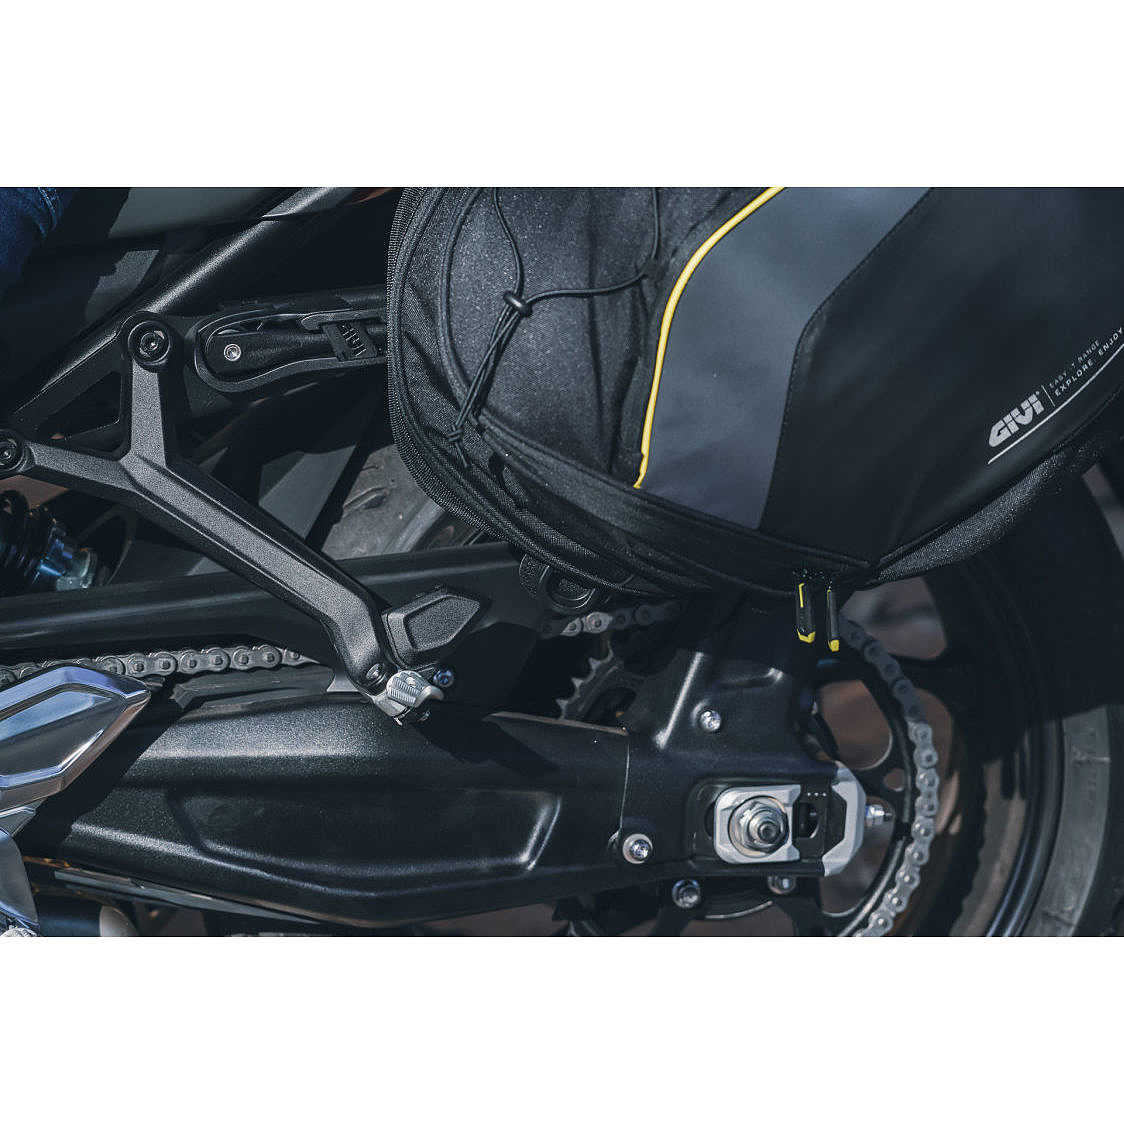 Kit de Protège-Mains pour Moto Guzzi V7 (2016+)